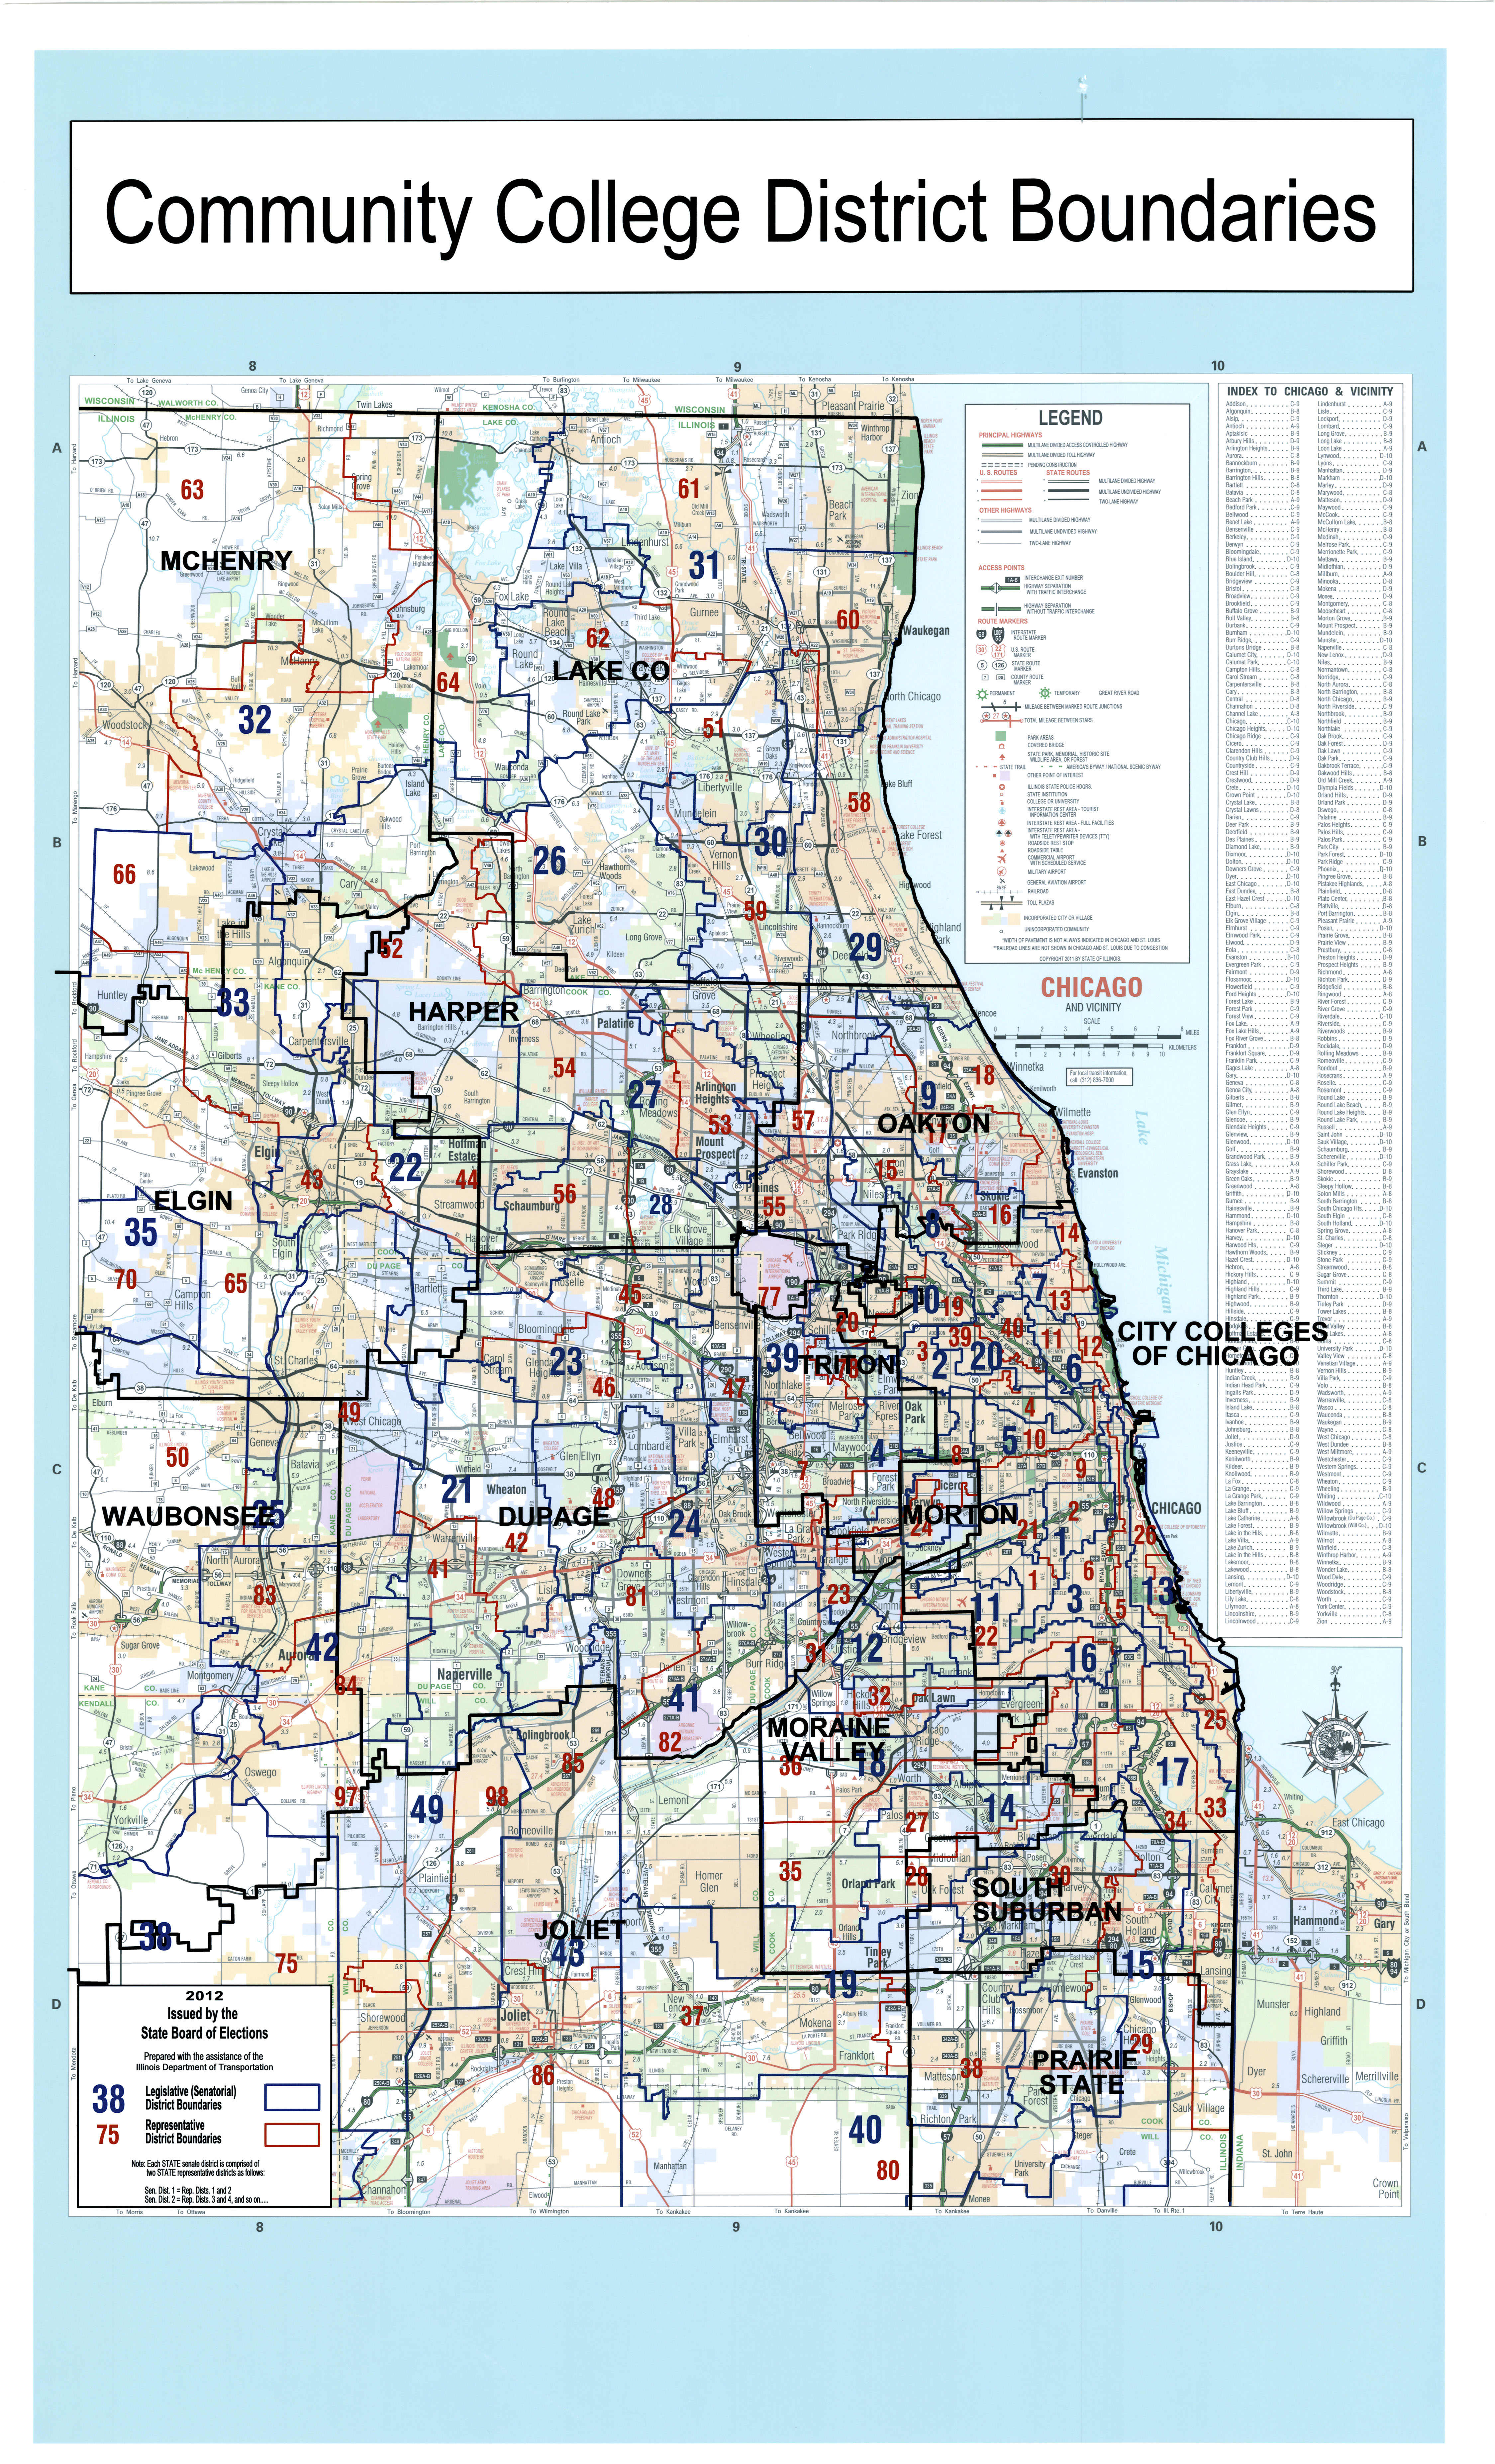 IL_Legislative_&_CC_Disticts_Chicago_Area3